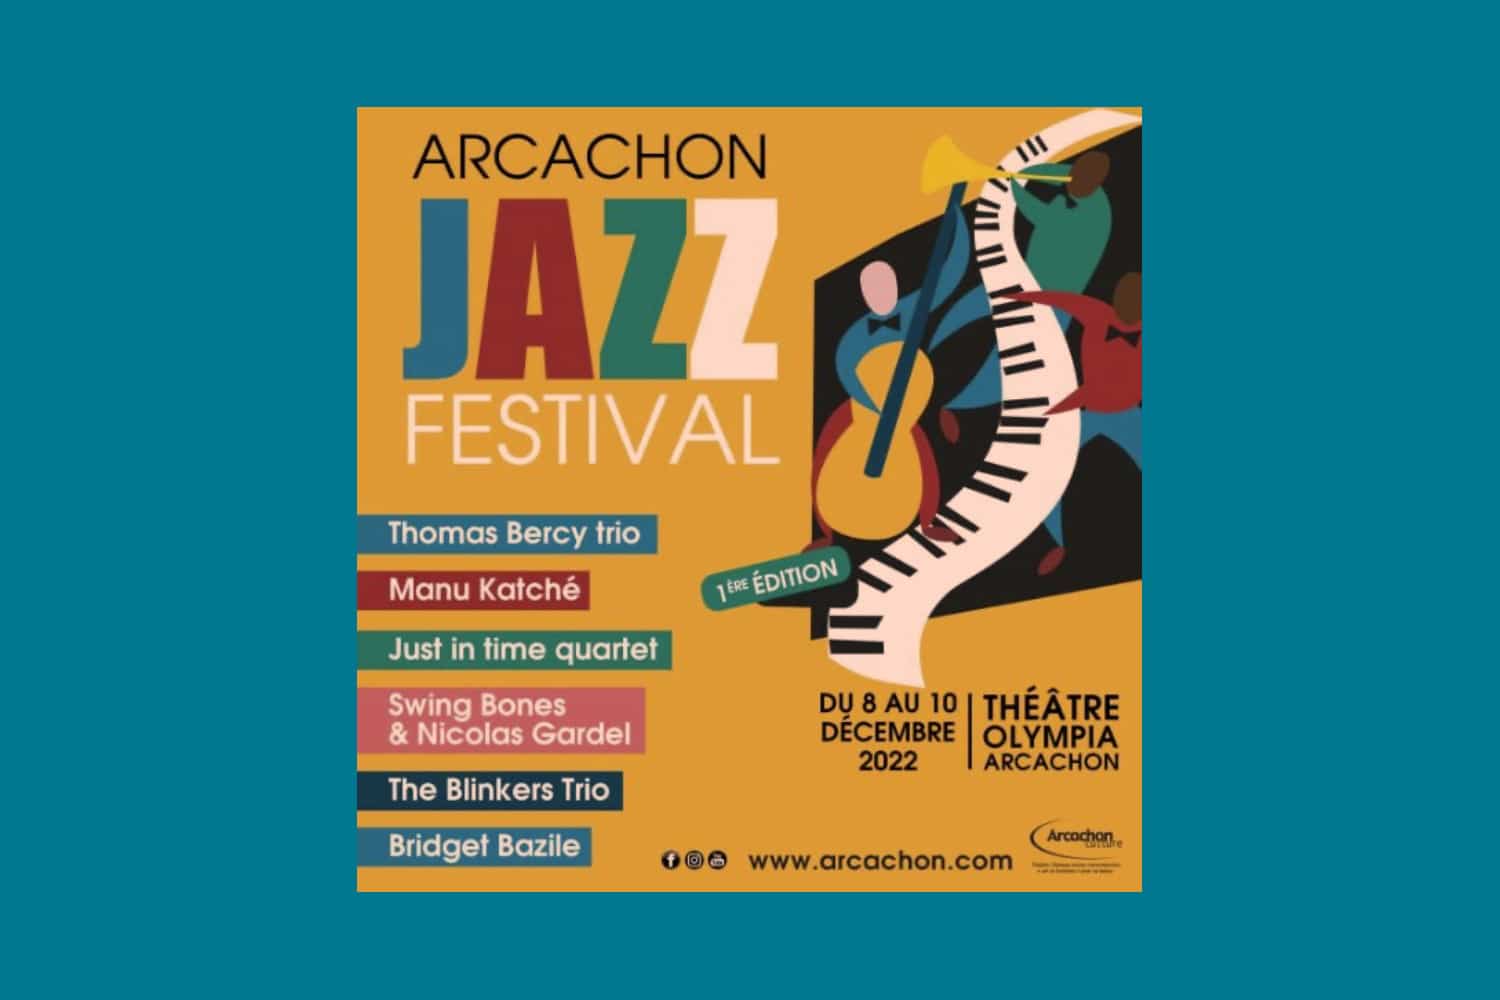 Arcachon propose la 1re édition de son Jazz Festival du 8 au 10 décembre 2022